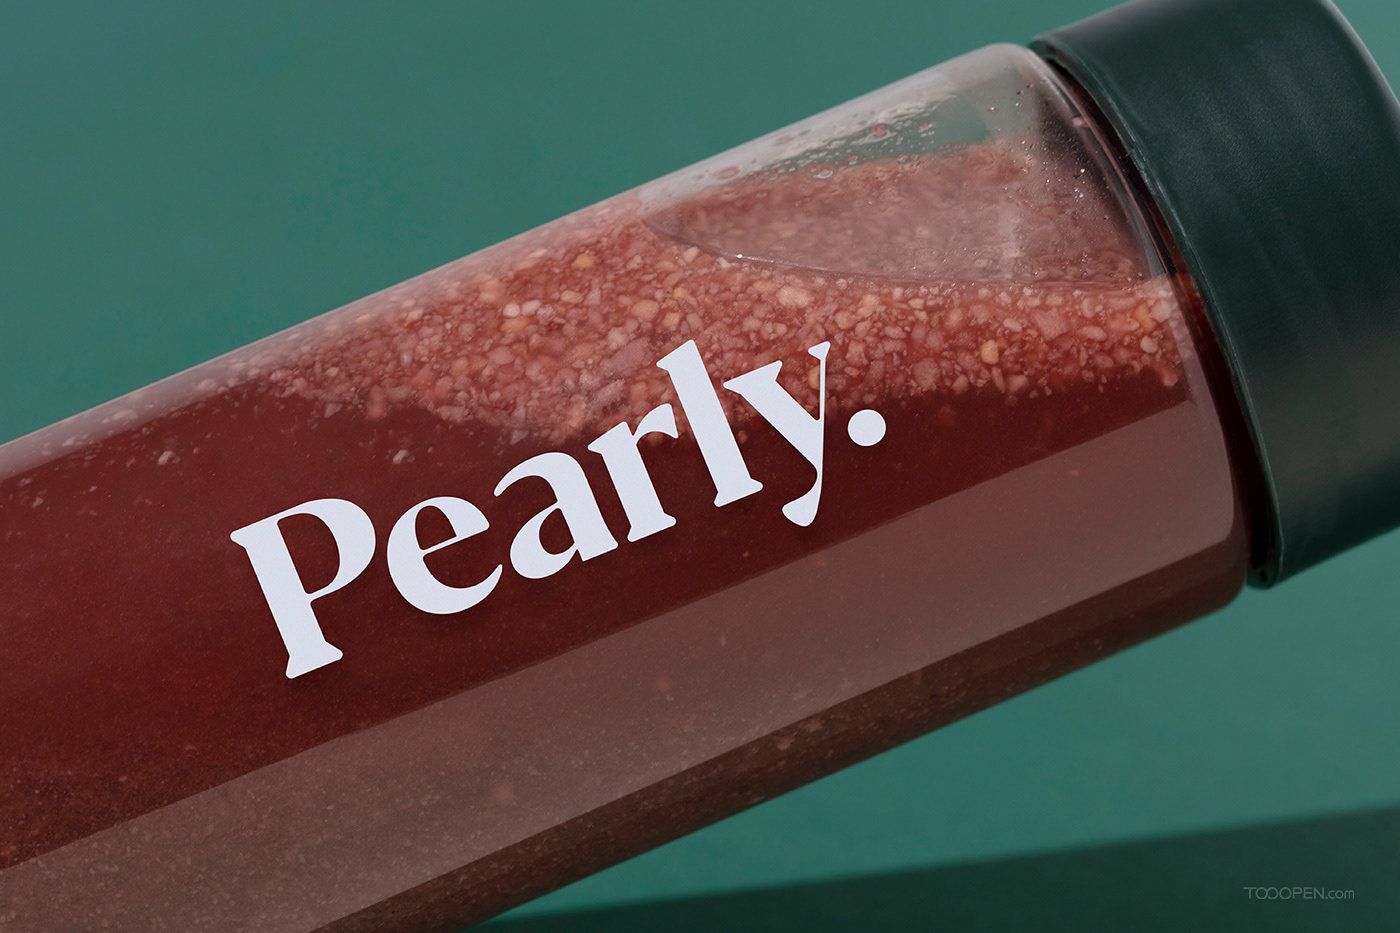 Pearly有机食品和蔬菜冻干食品包装设计作品欣赏-09